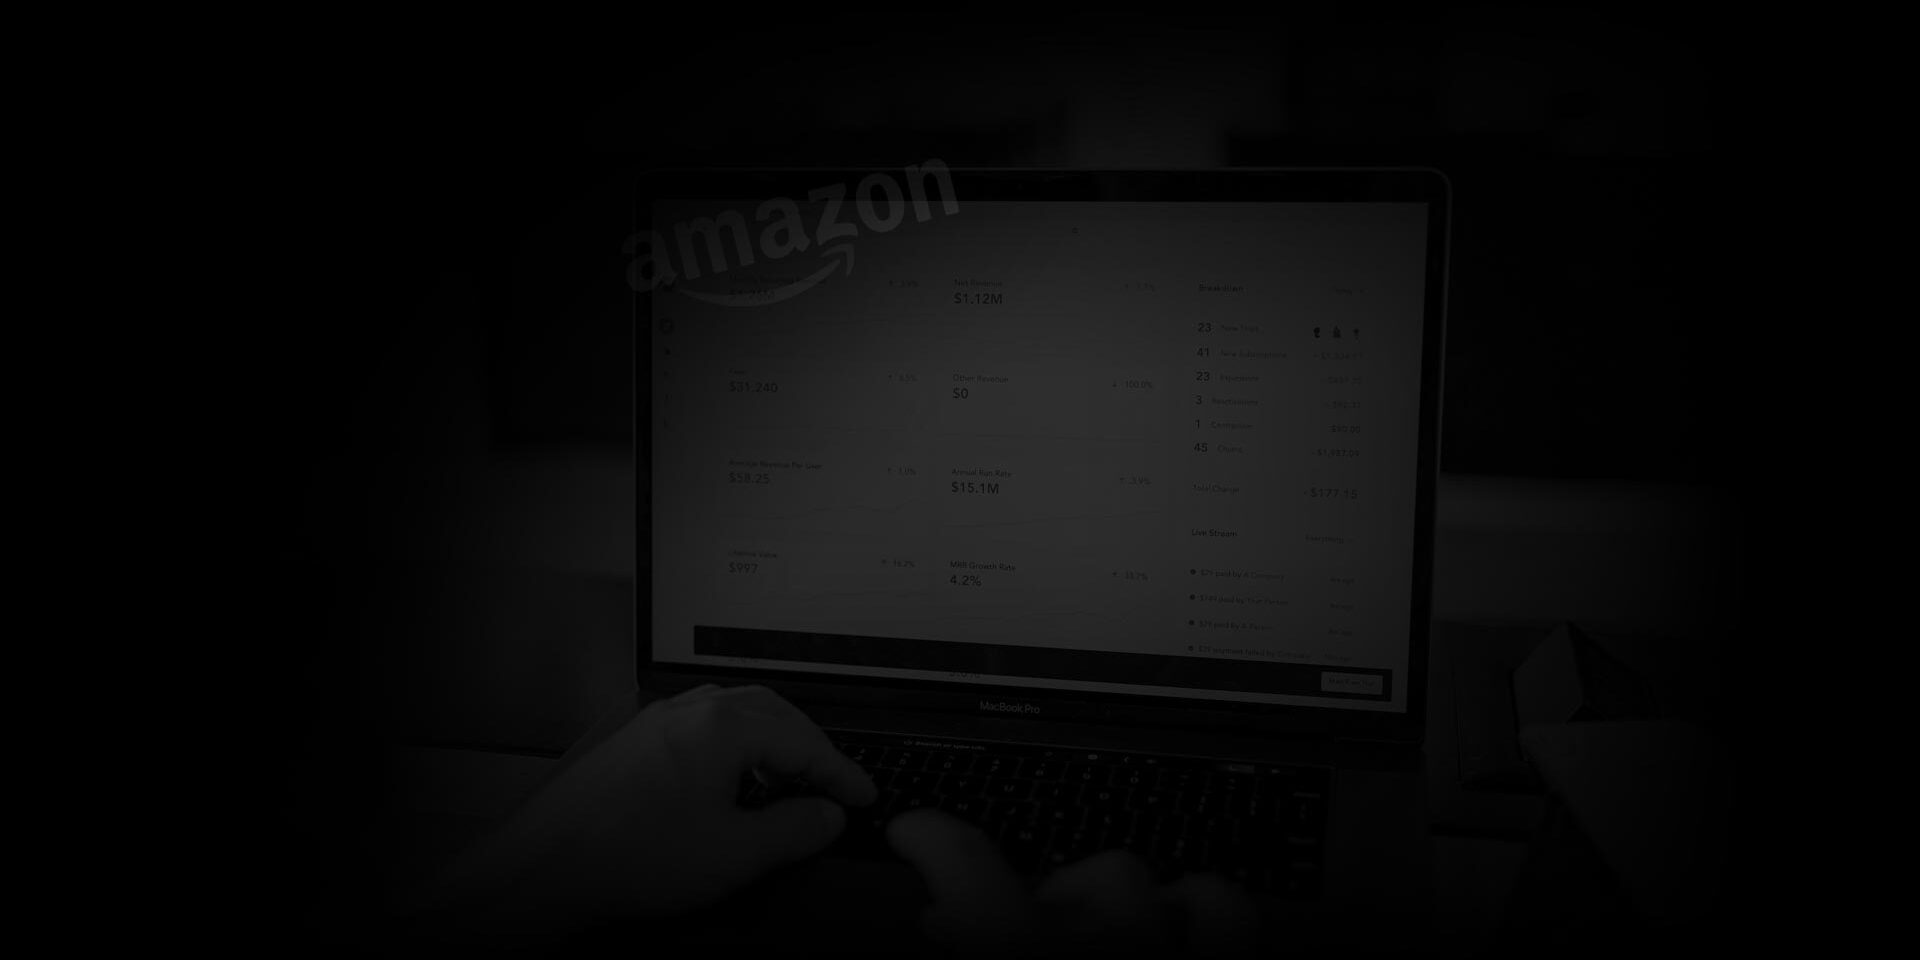 Amazon Store Development